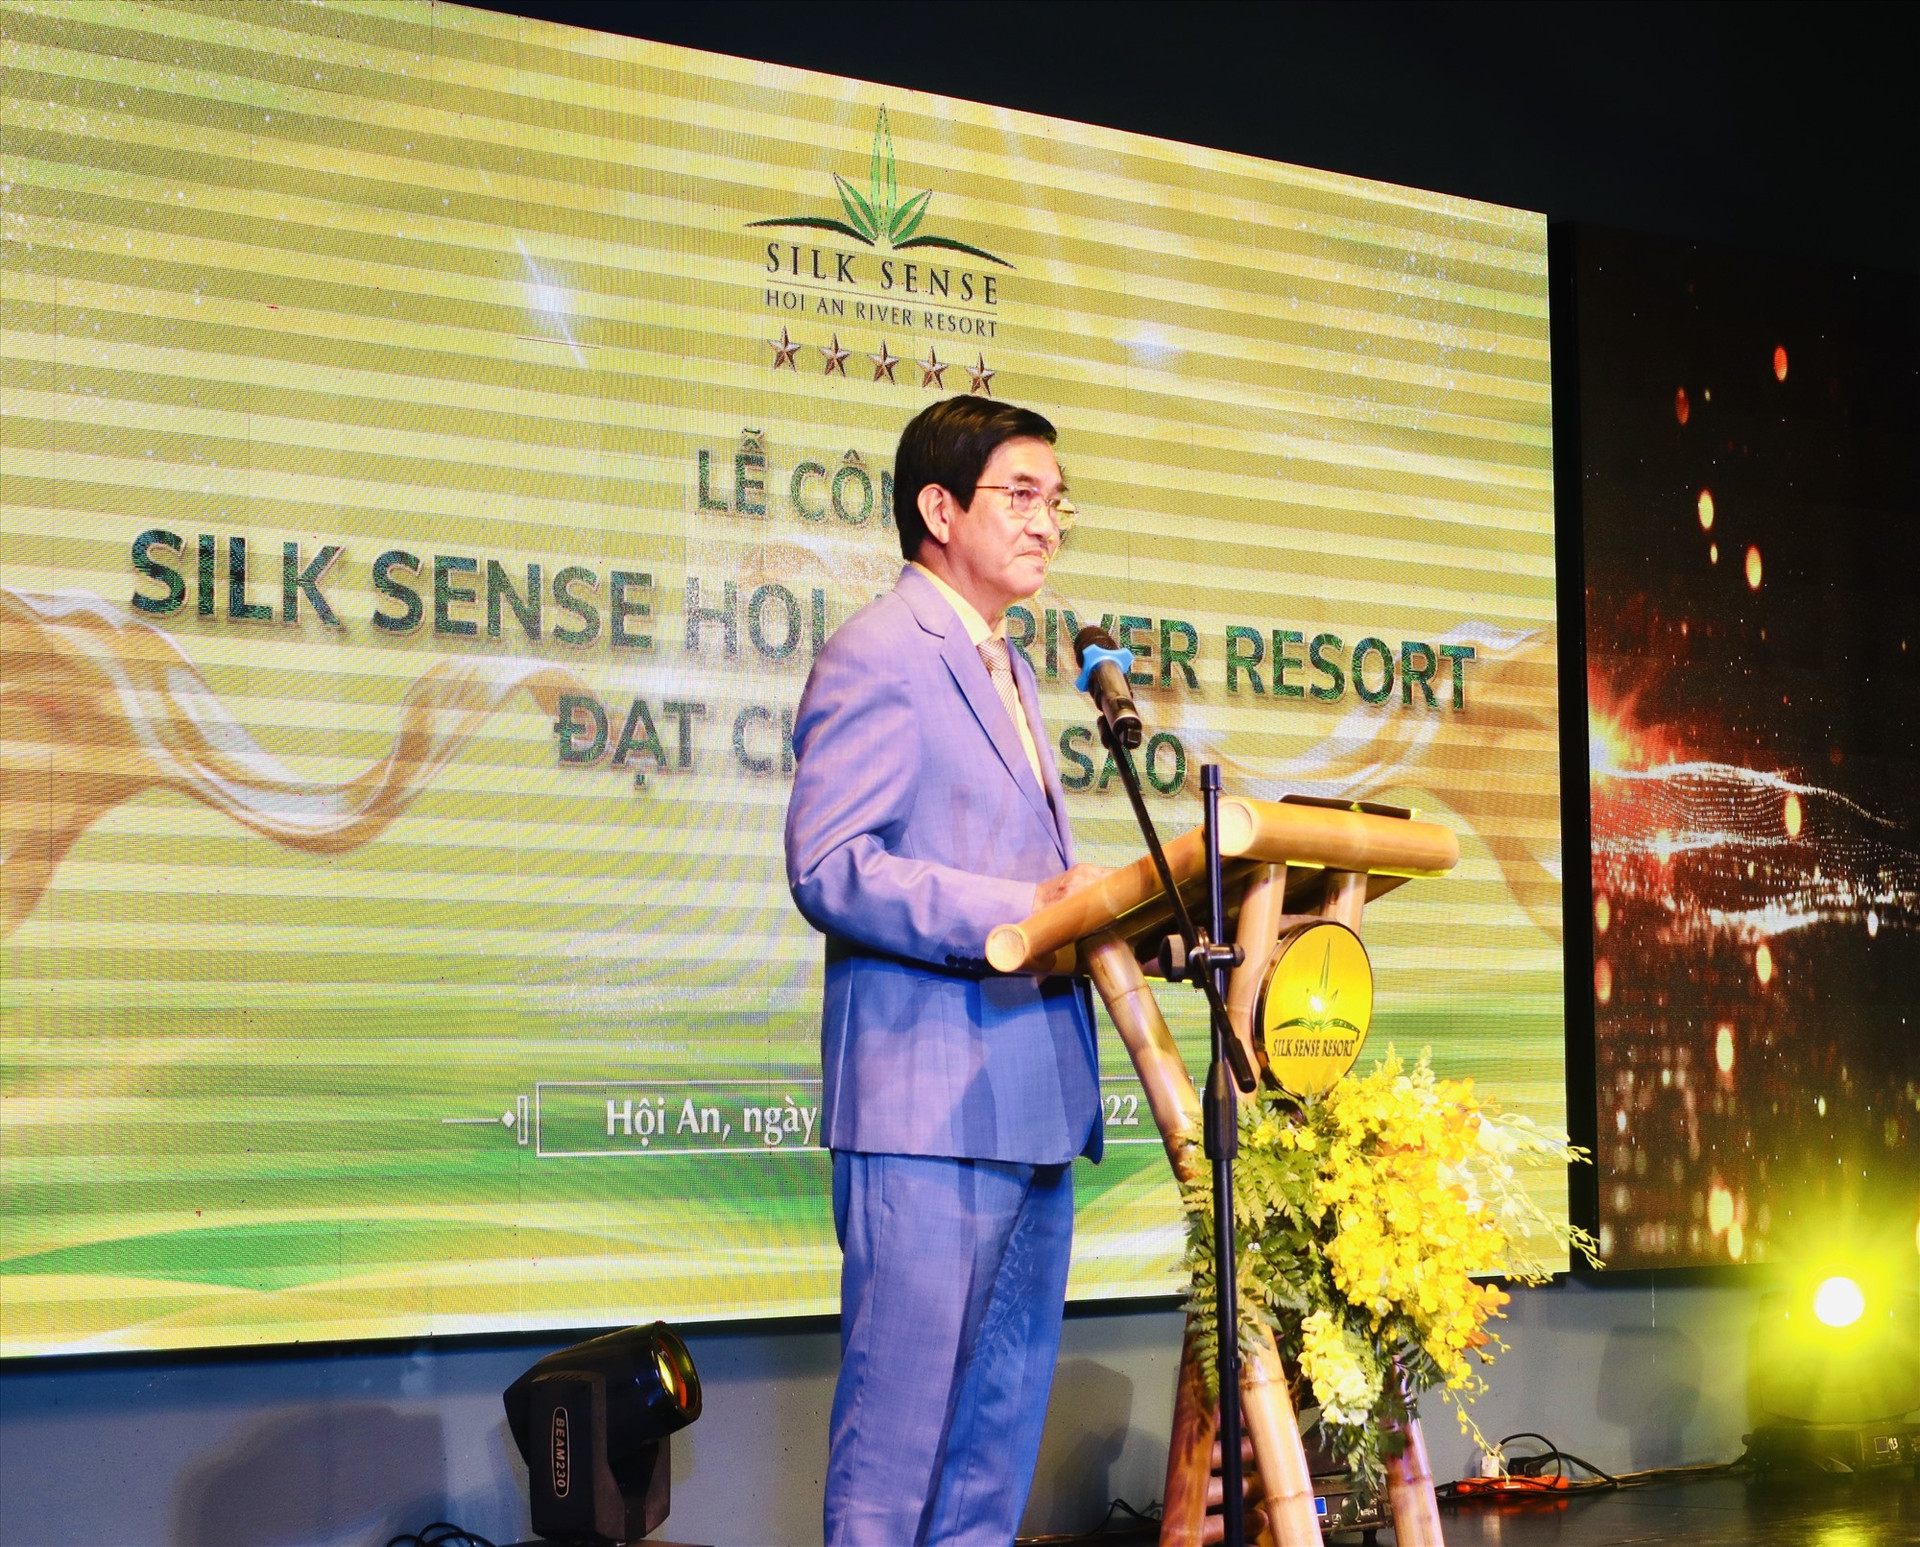 Ông Trần Thái Do - chủ đầu tư Silk Sense Hội An River Resort chia sẻ tại buổi lễ. Ảnh: T.L